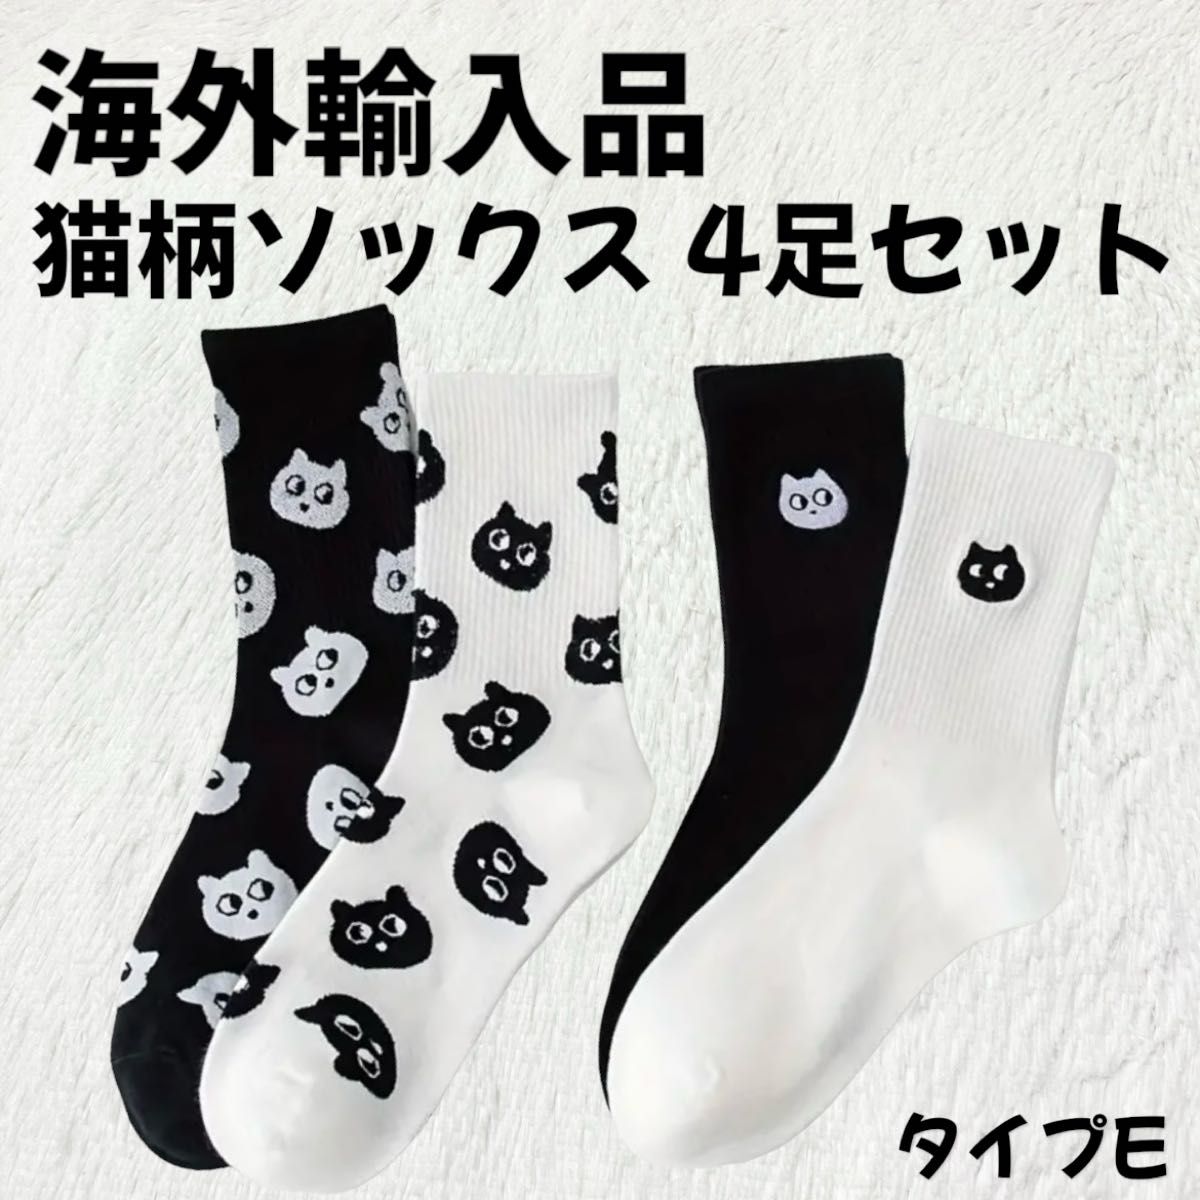 【海外輸入品】猫柄 ソックス 靴下 4足セット タイプE【新品未使用】